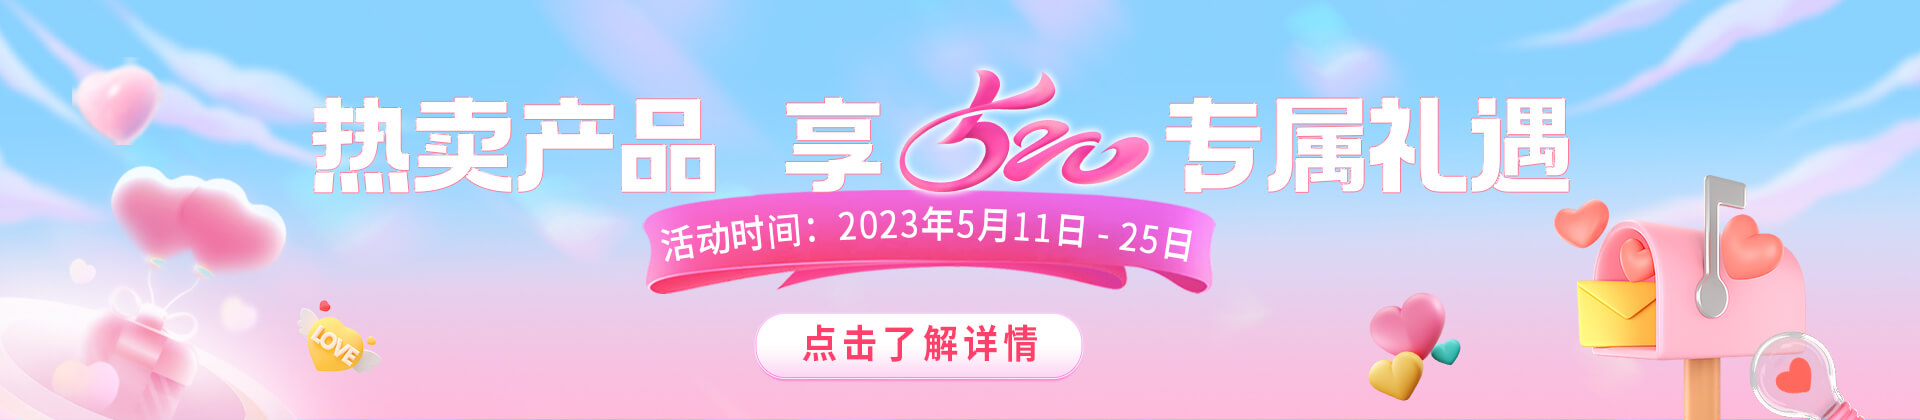 23.4.26 5月动销电脑版banner(2).jpg